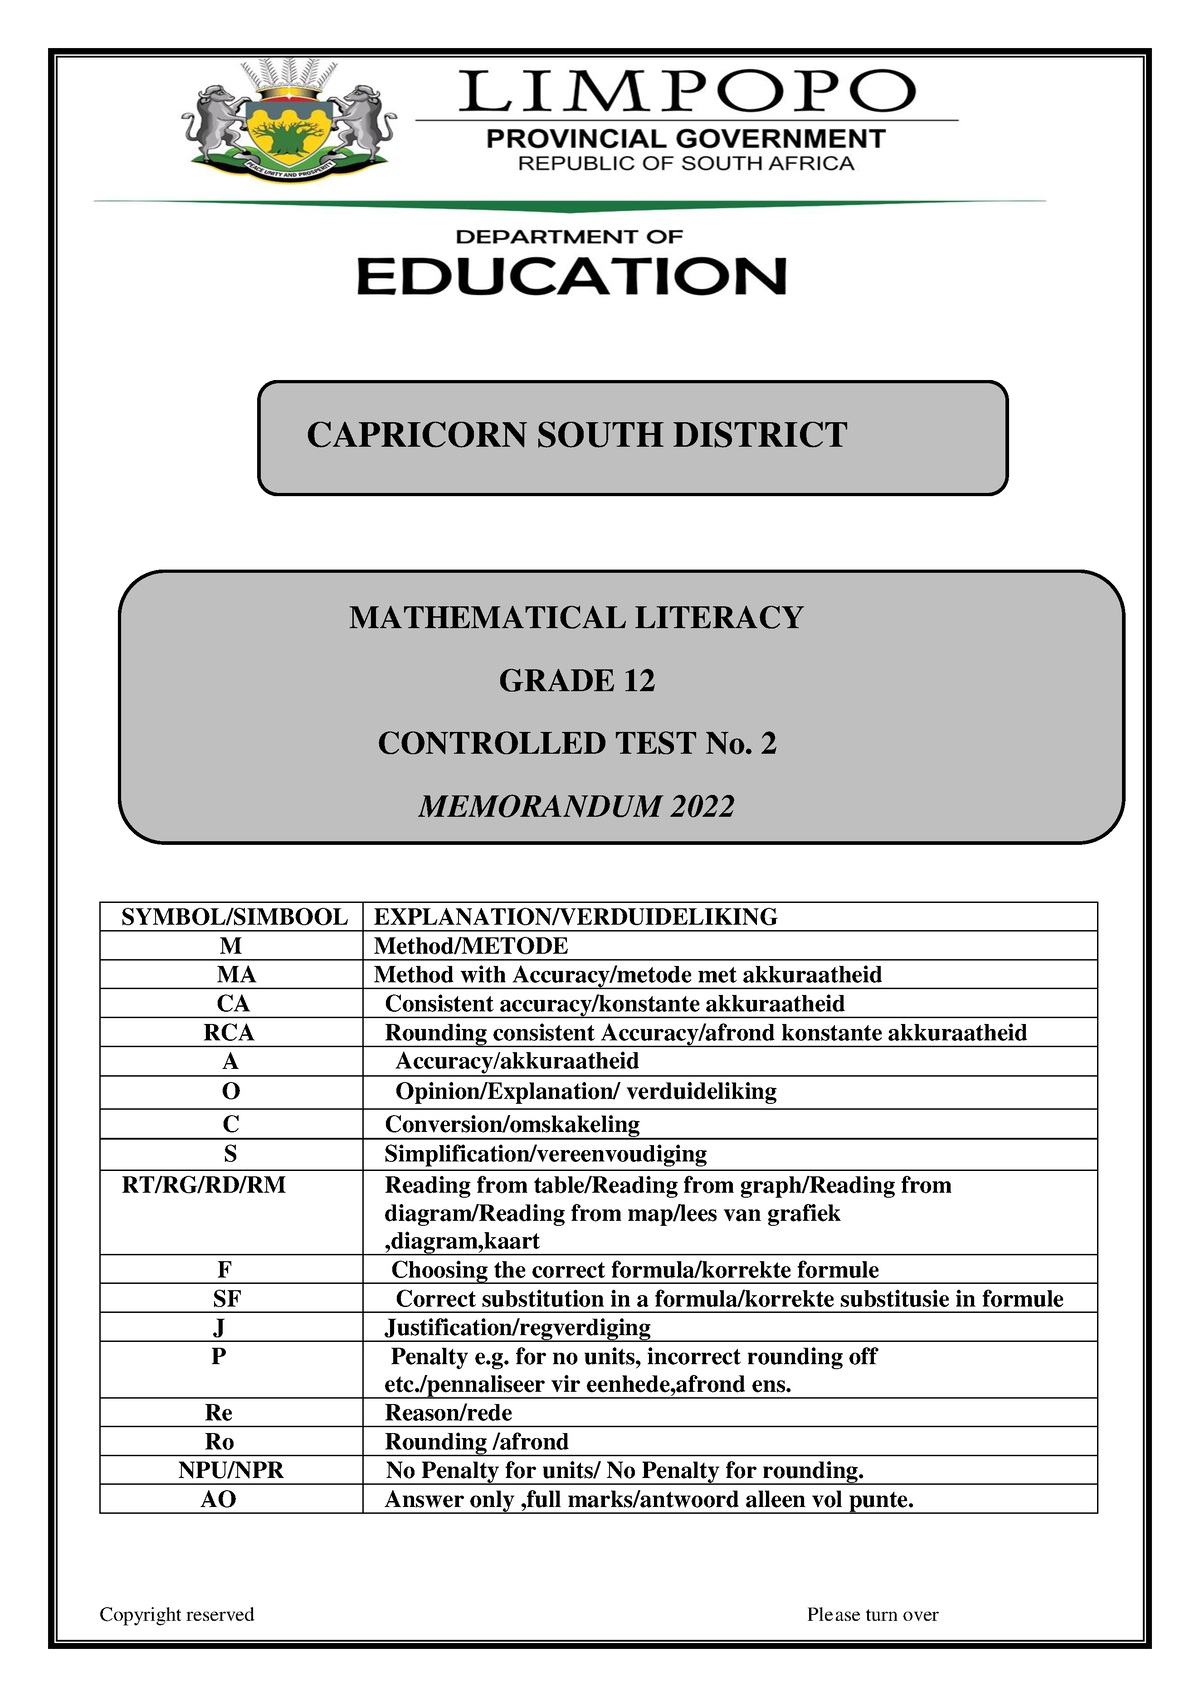 mathematical literacy grade 10 assignment term 2 memorandum